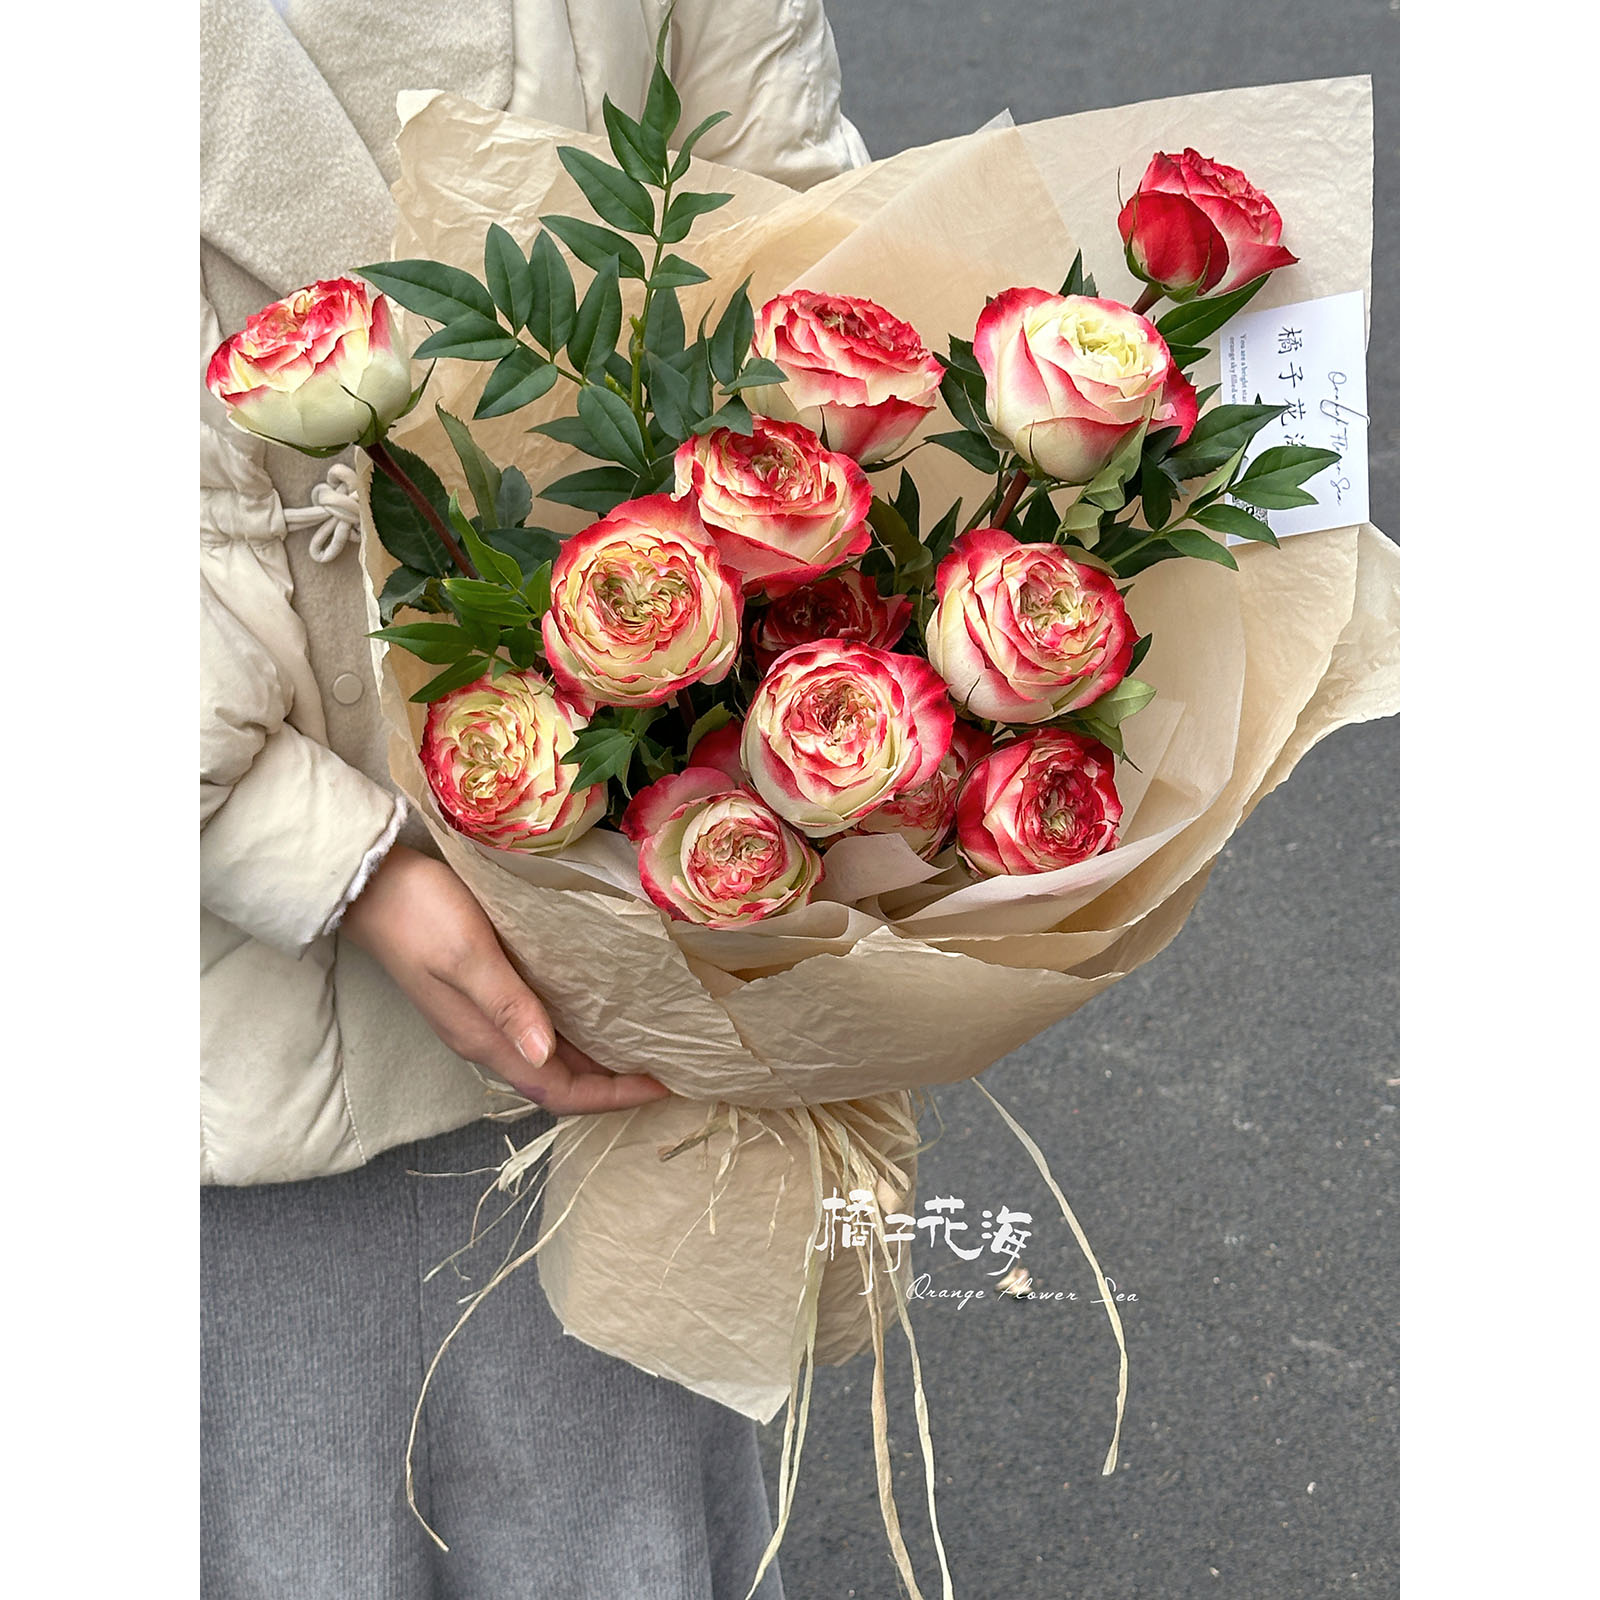 苹果杰克 520情人节重庆鲜花速递同城配送玫瑰花束生日送朋友女友